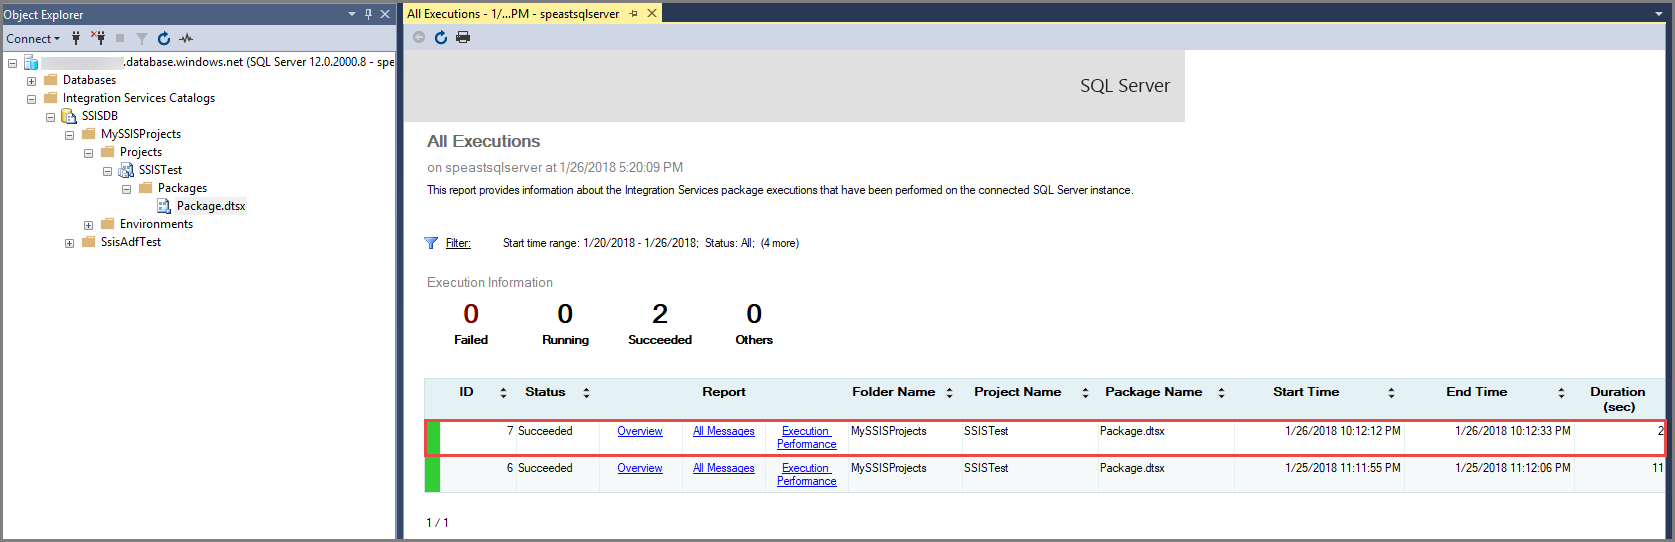 Skärmbild som visar verifiering av en SSIS-paketkörning.